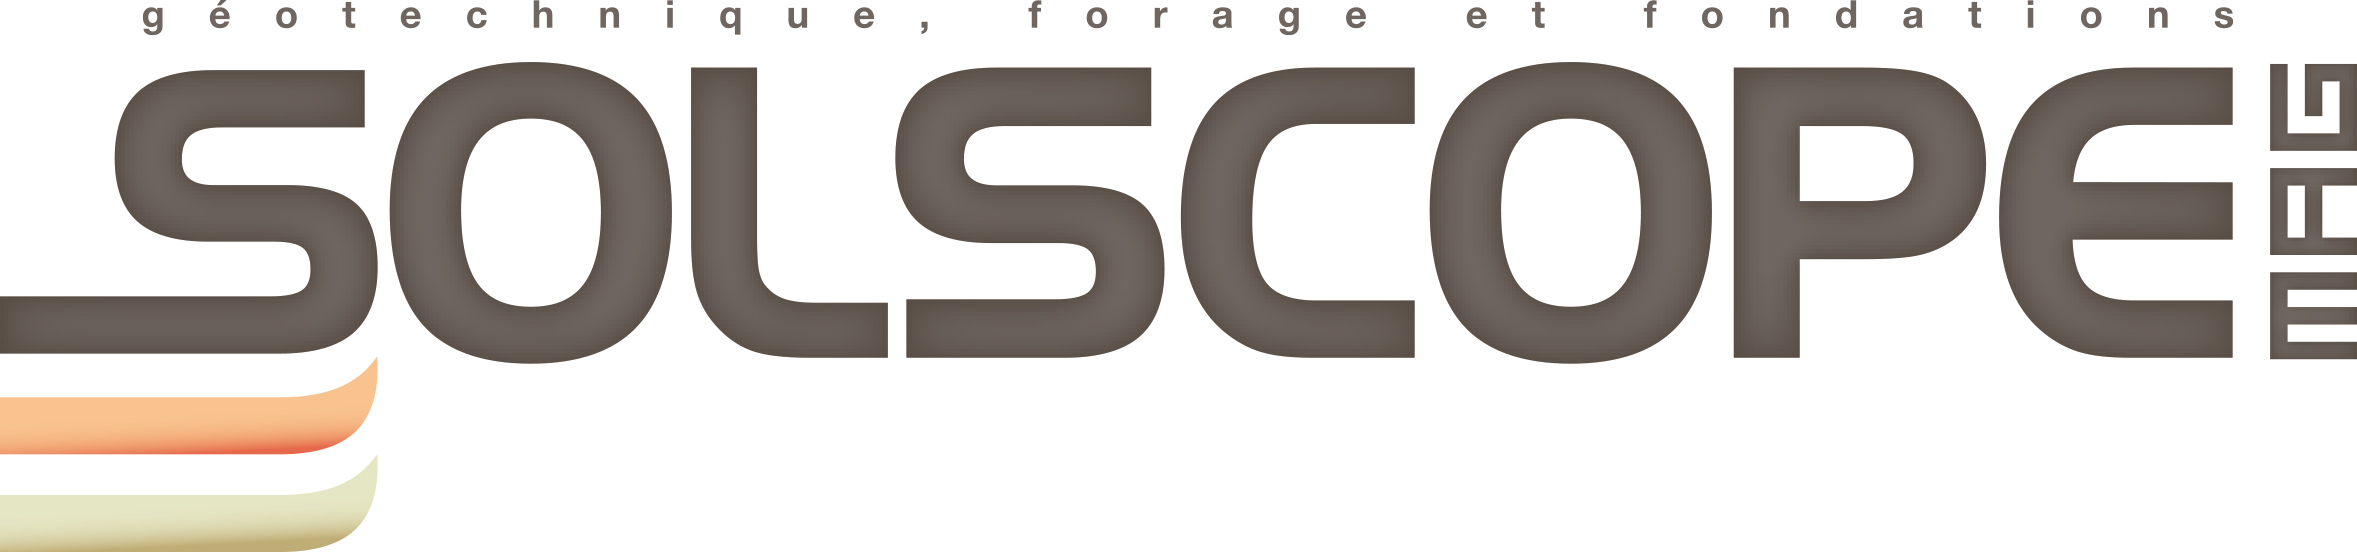 Solscope - Salon national de la Géotechnique du Forage et ...